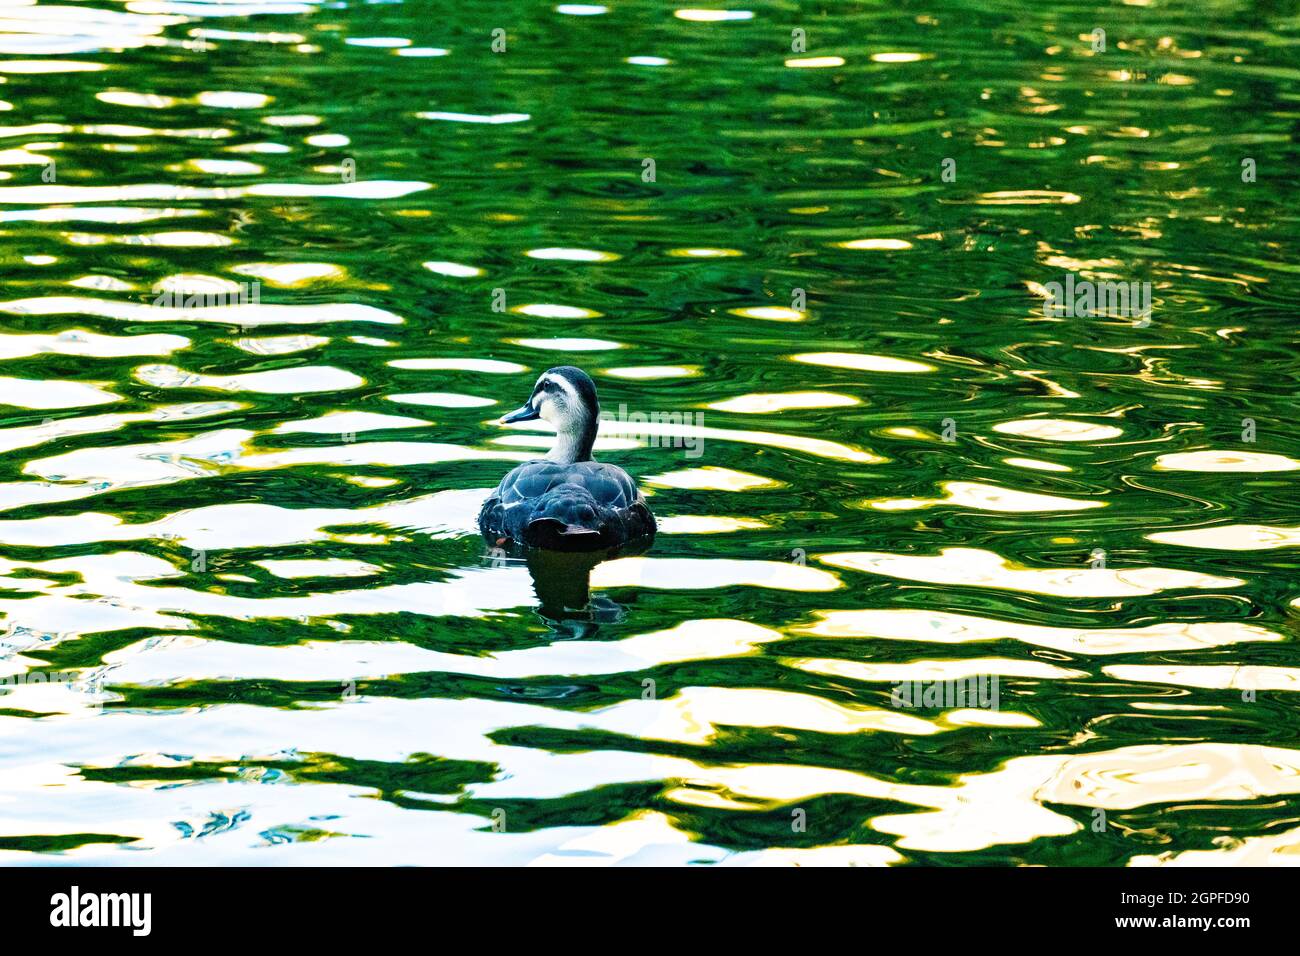 magnifique reflet de l'eau avec canard nageant Banque D'Images